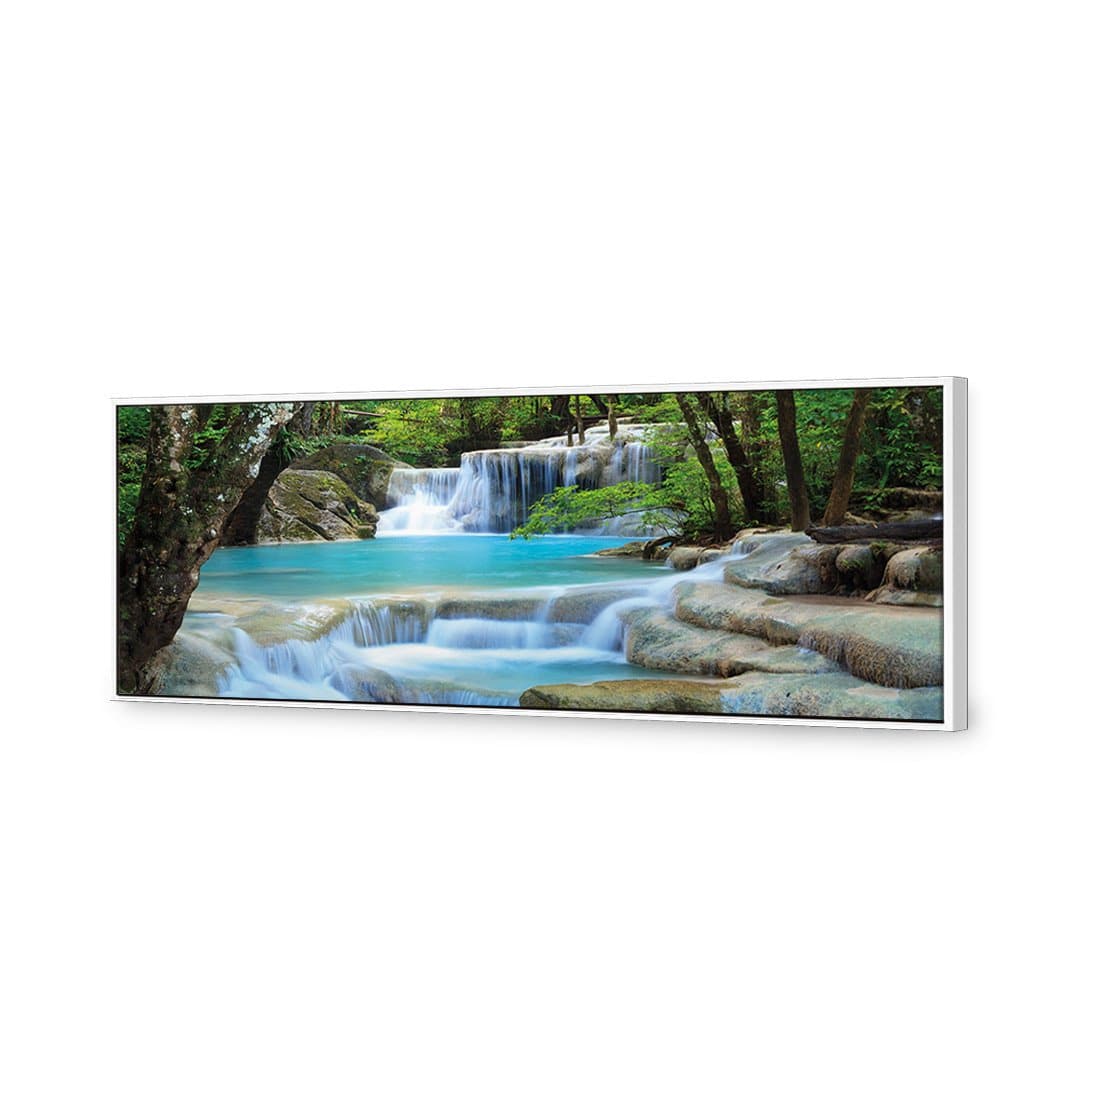 Soft Waterfalls Canvas Art-Canvas-Wall Art Designs-60x20cm-Canvas - White Frame-Wall Art Designs